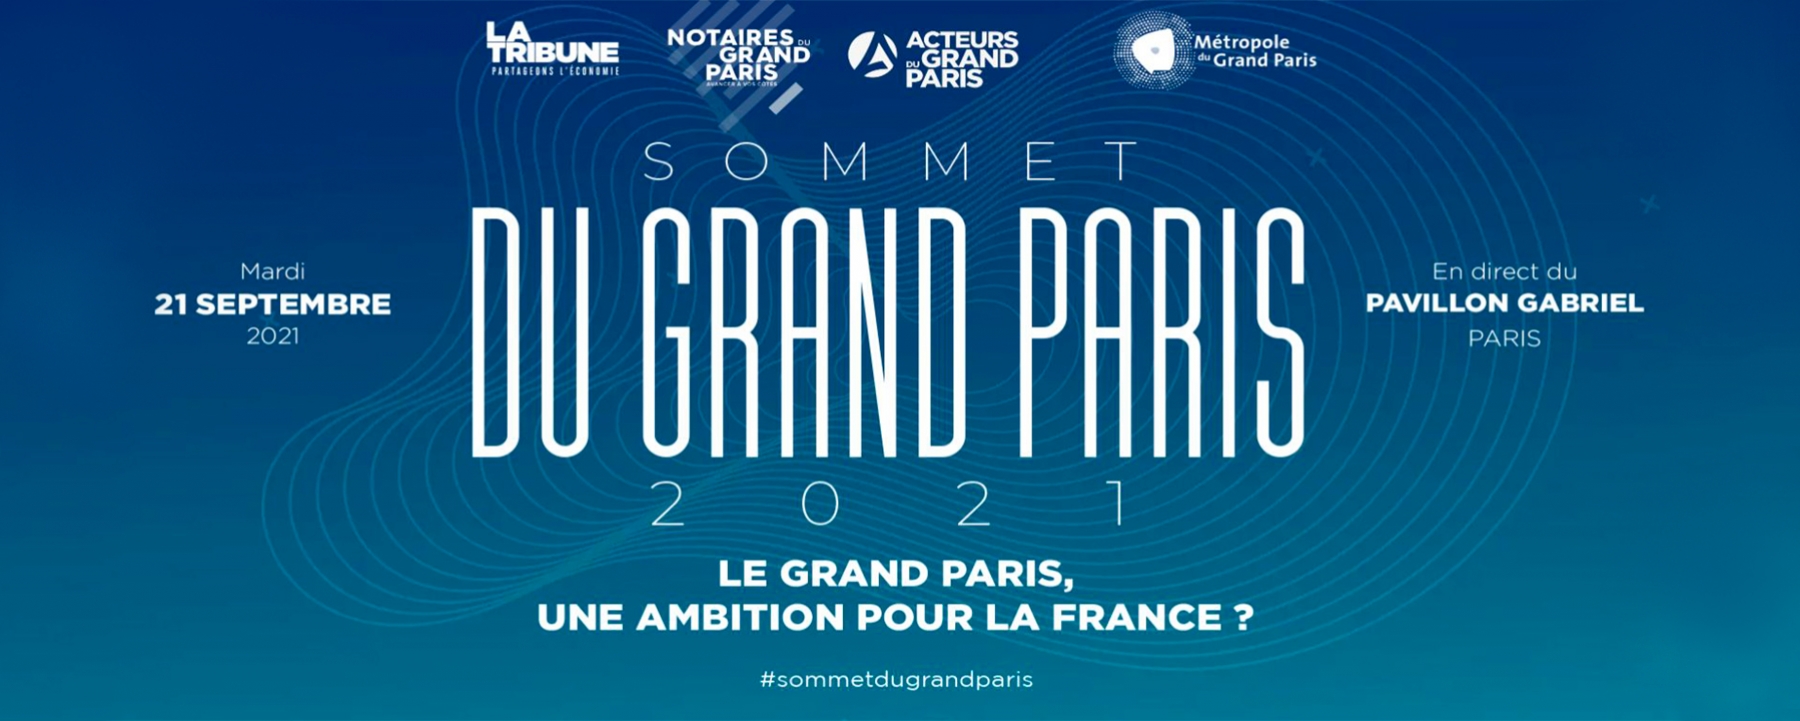 Sommet du Grand Paris 21 septembre 2021